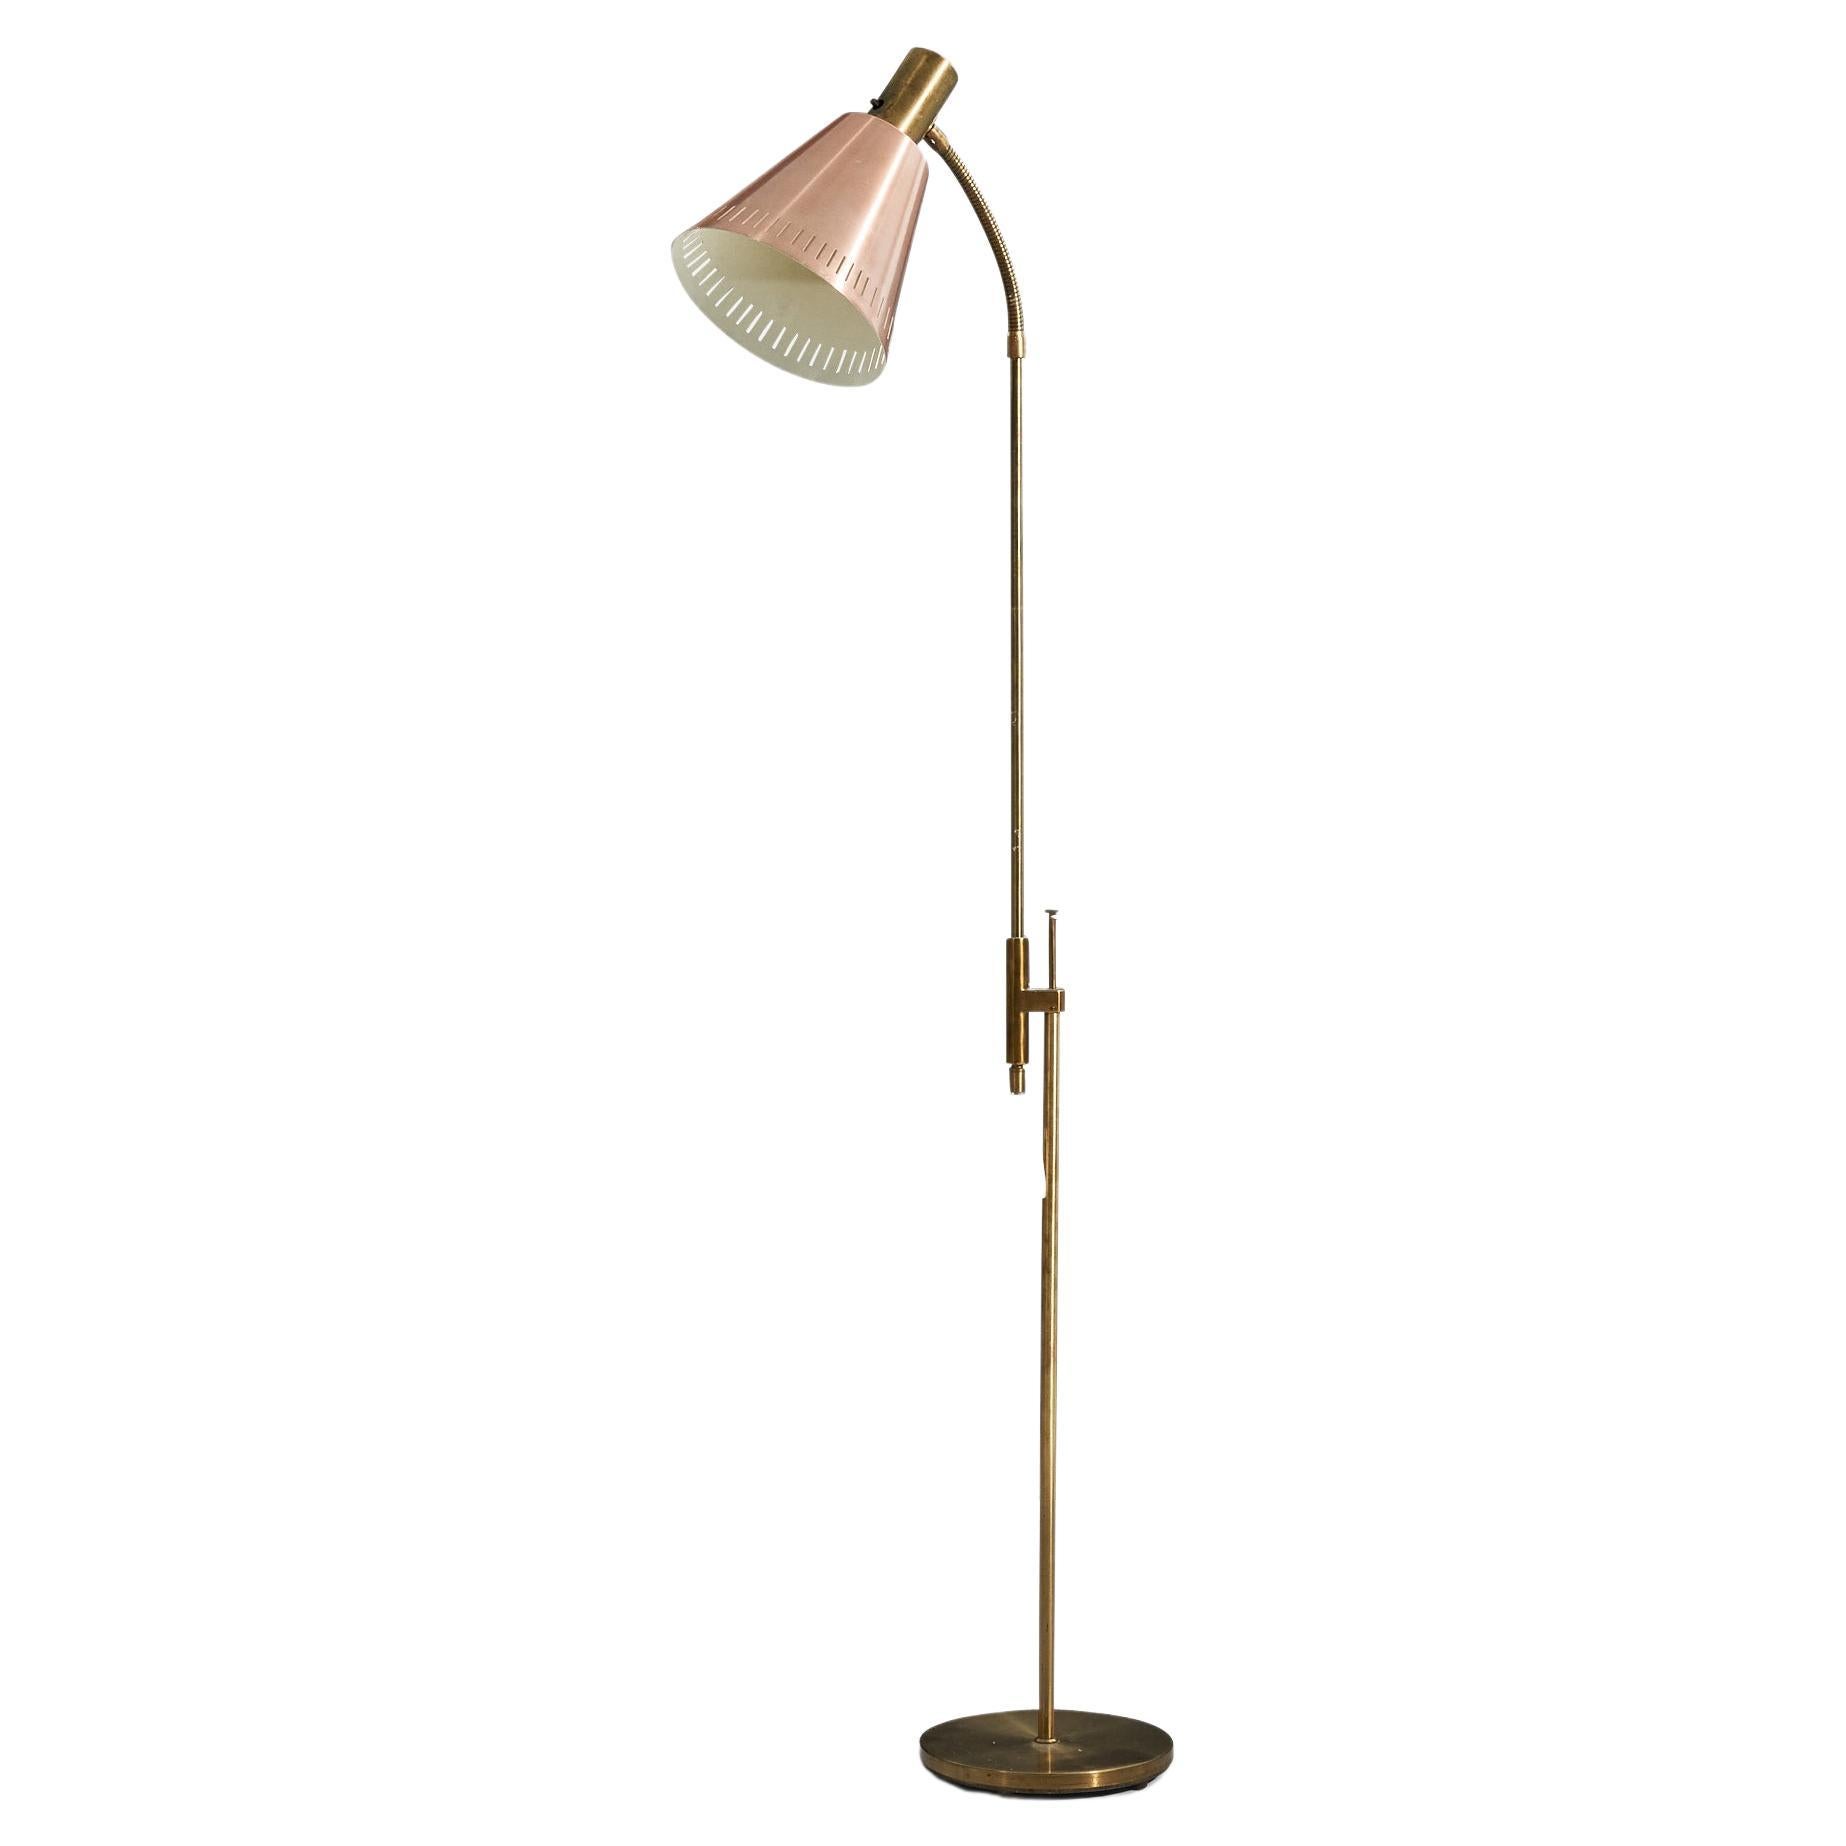 Falkenberg Belysning, Adjustable Floor Lamp, Brass, Sweden, 1950s